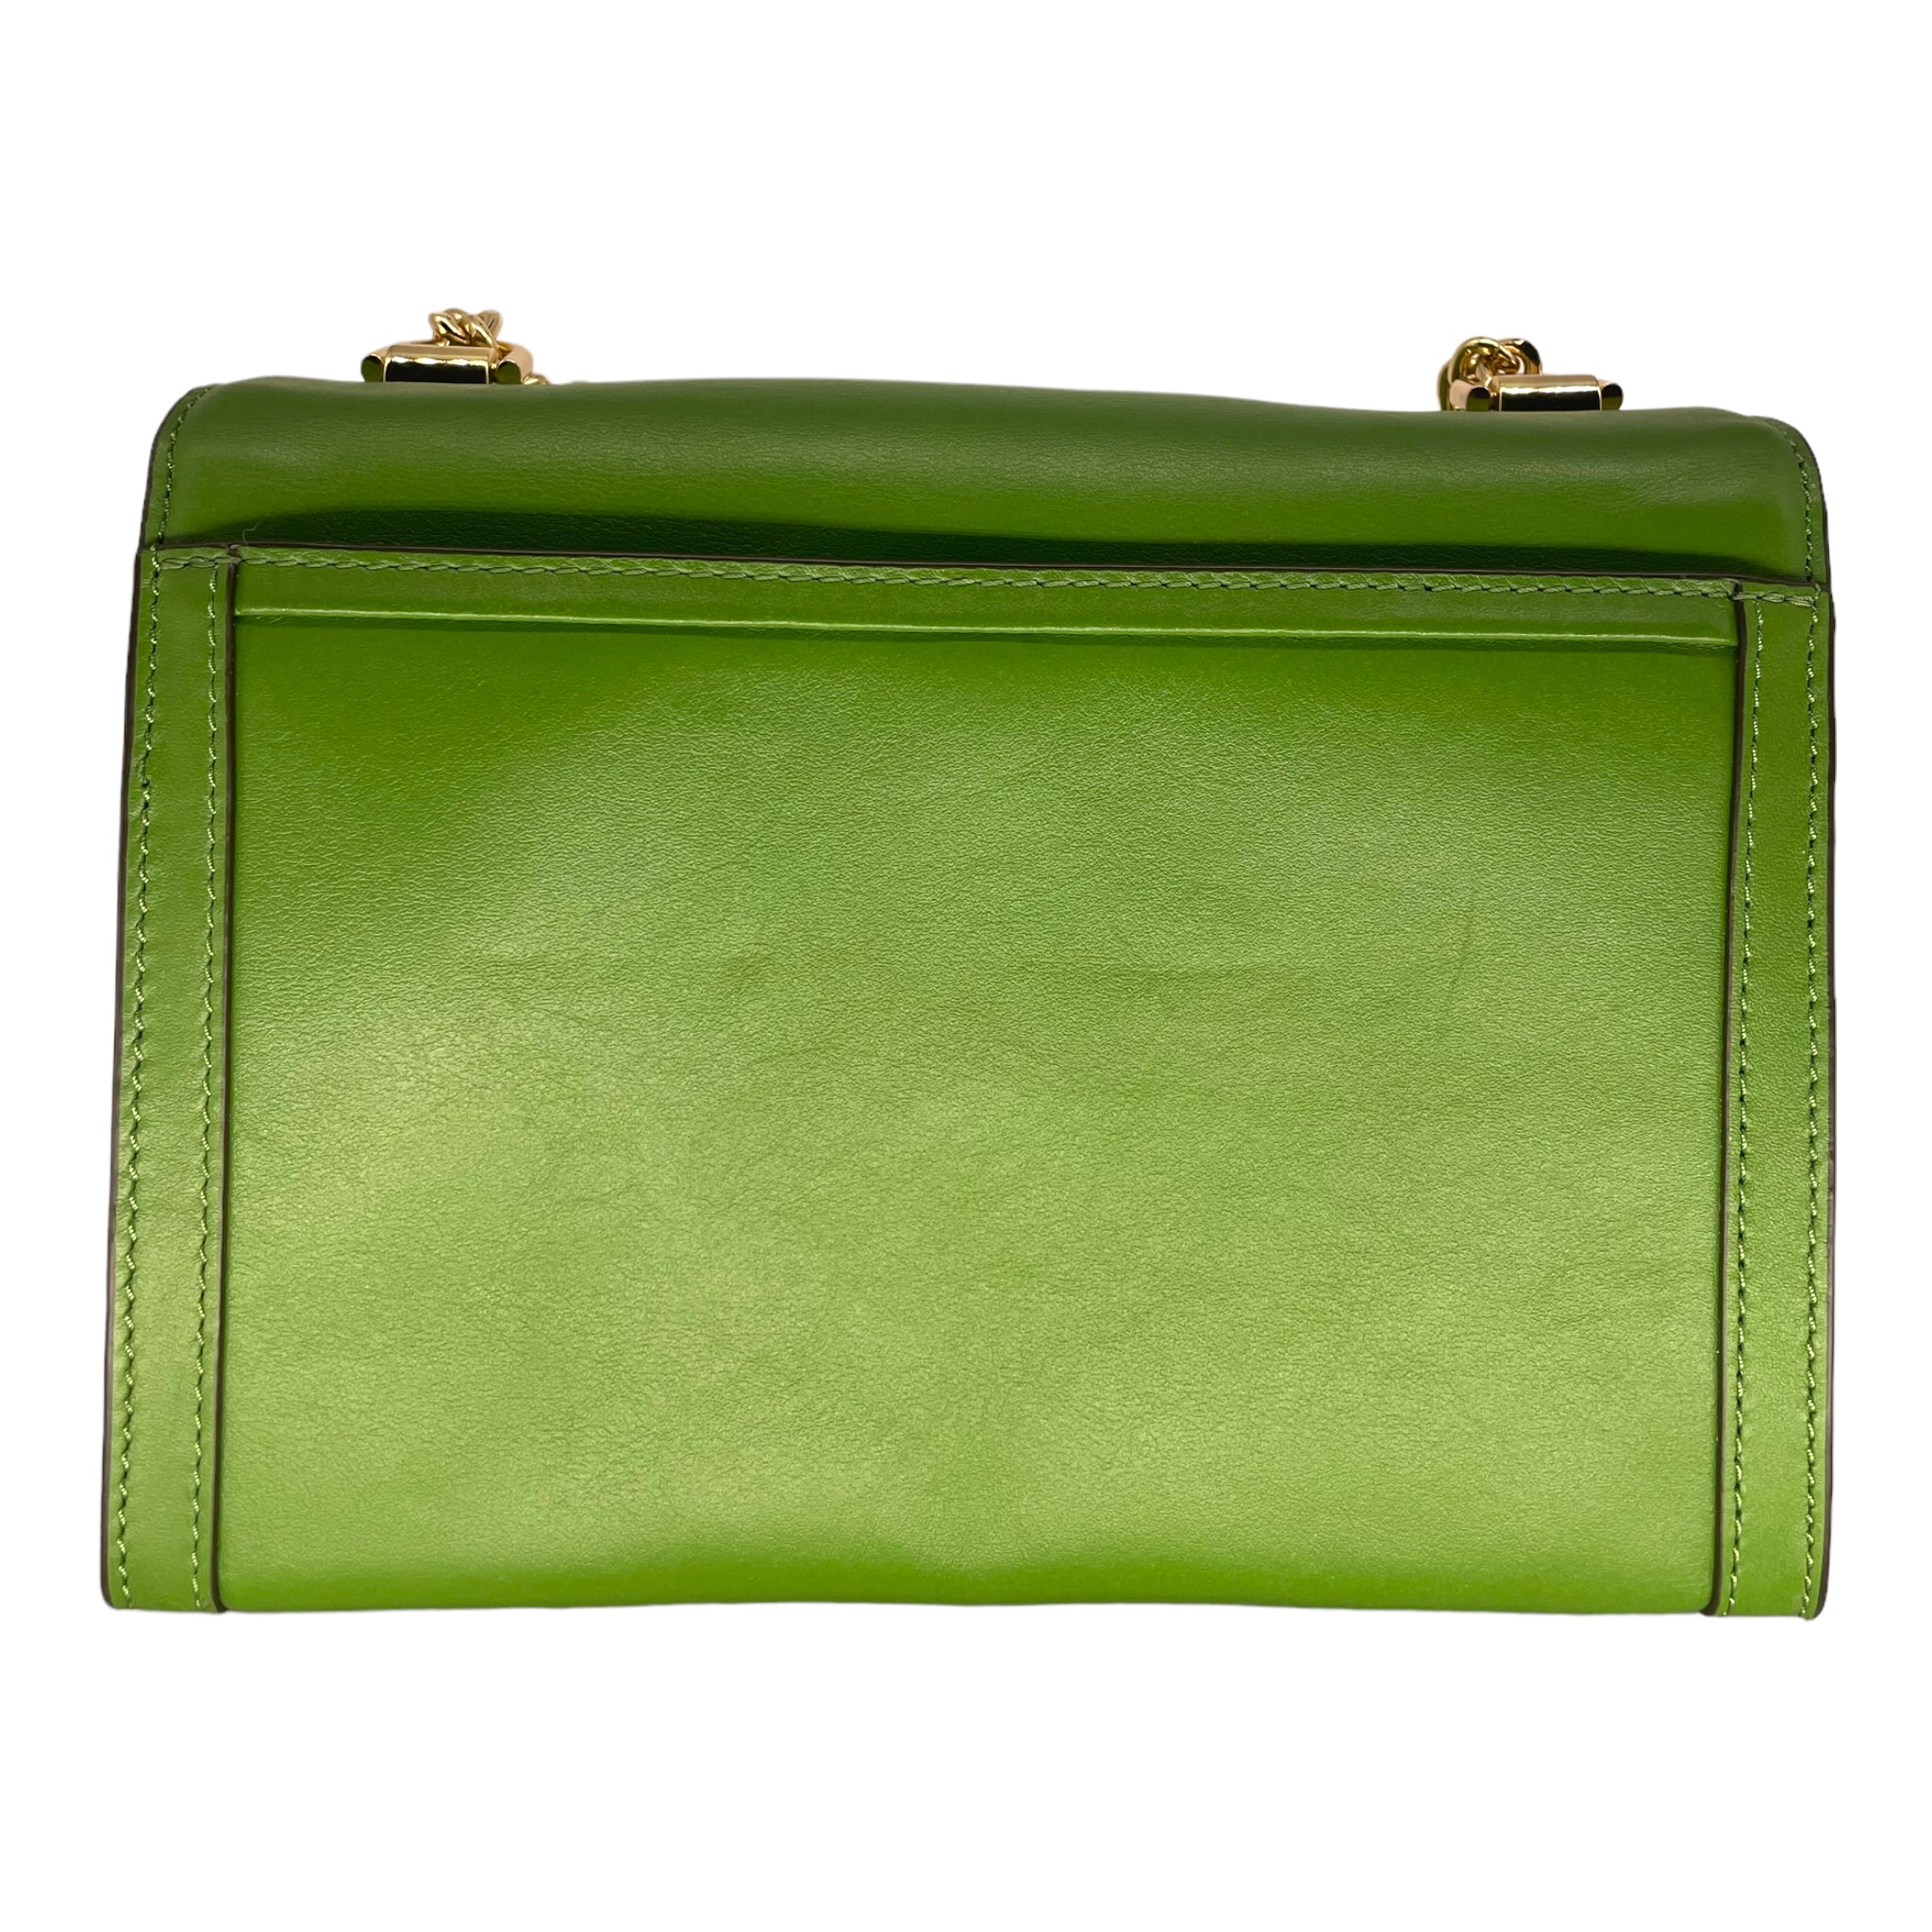 Michael Kors Green Leather Satchel Handbag Crossbody Bag + Card Holder  Wallet MK LIGHT SAGE - Michael Kors bag - | Fash Brands